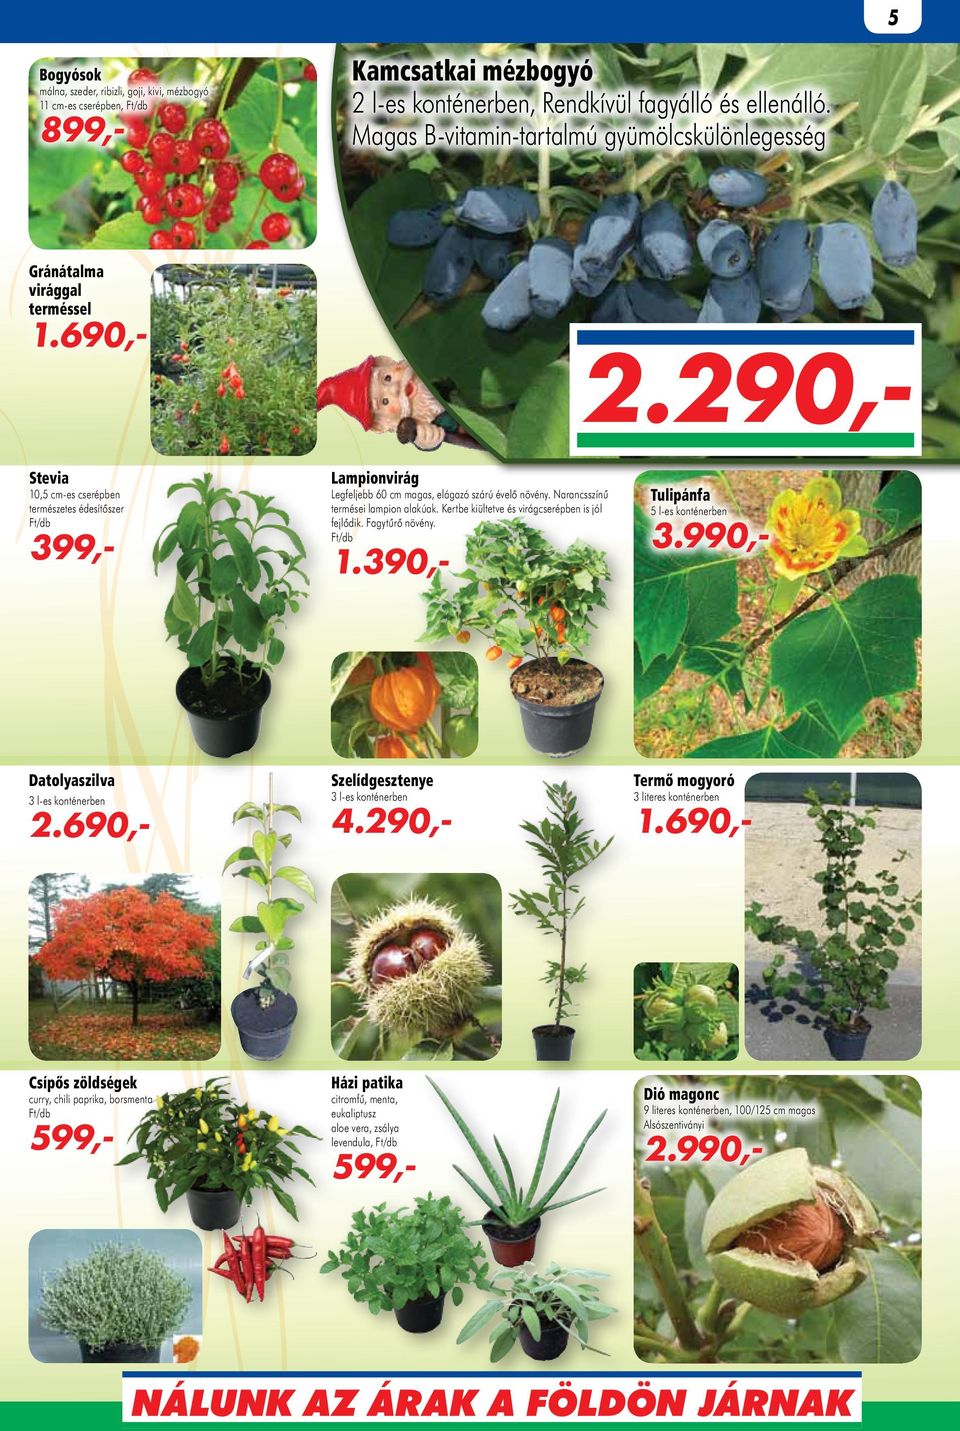 29 Stevia 10,5 cm-es cserépben természetes édesítőszer 399,- Lampionvirág Legfeljebb 60 cm magas, elágazó szárú évelő növény. Narancsszínű termései lampion alakúak.